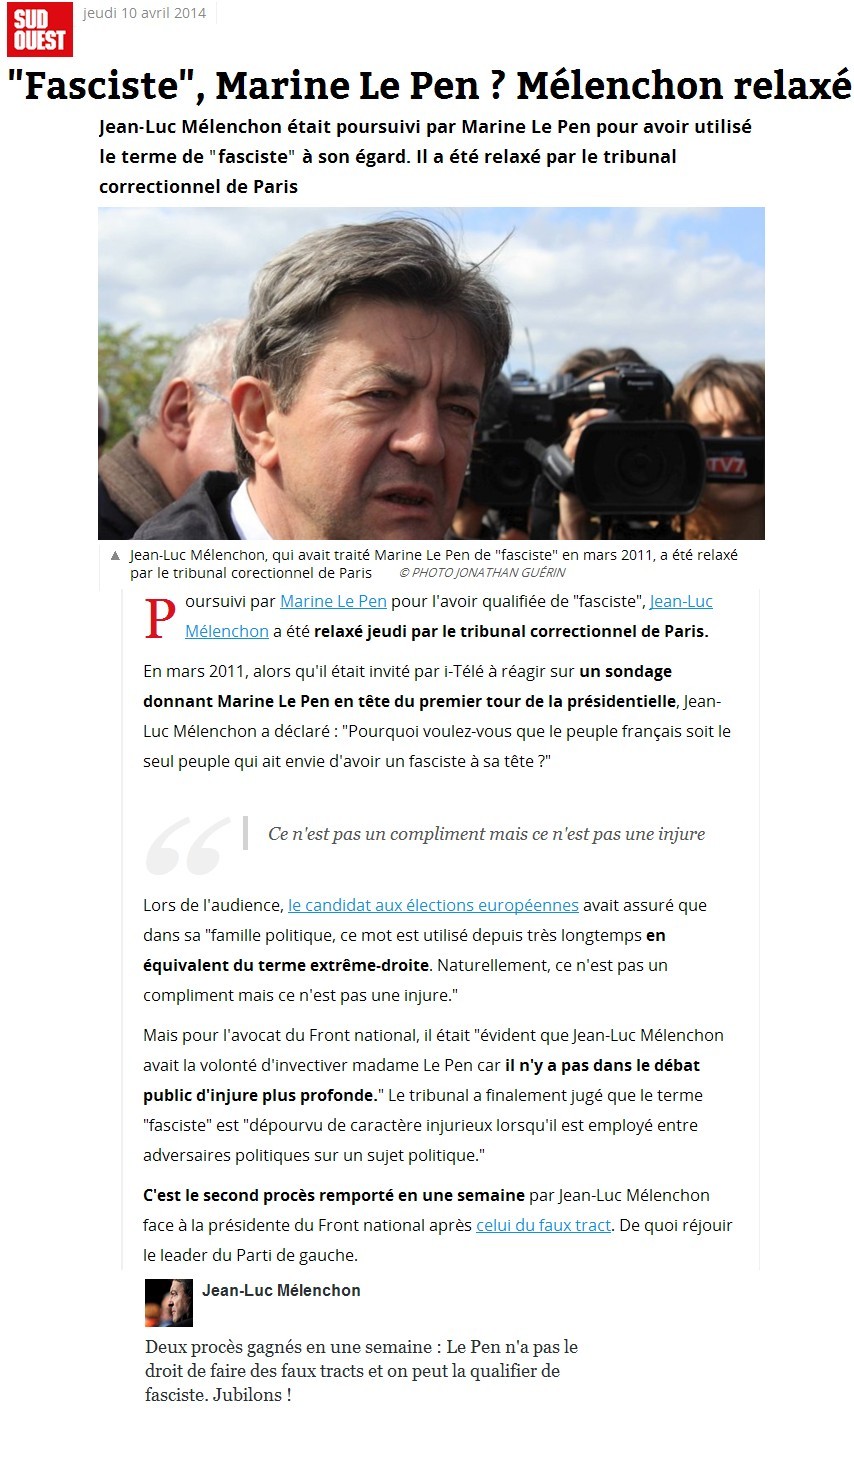 Poursuivi pour avoir qualifié Marine Le Pen de " fasciste " en 2011, Jean-Luc Mélenchon est relaxé (FrancetvInfo) Jubilo10